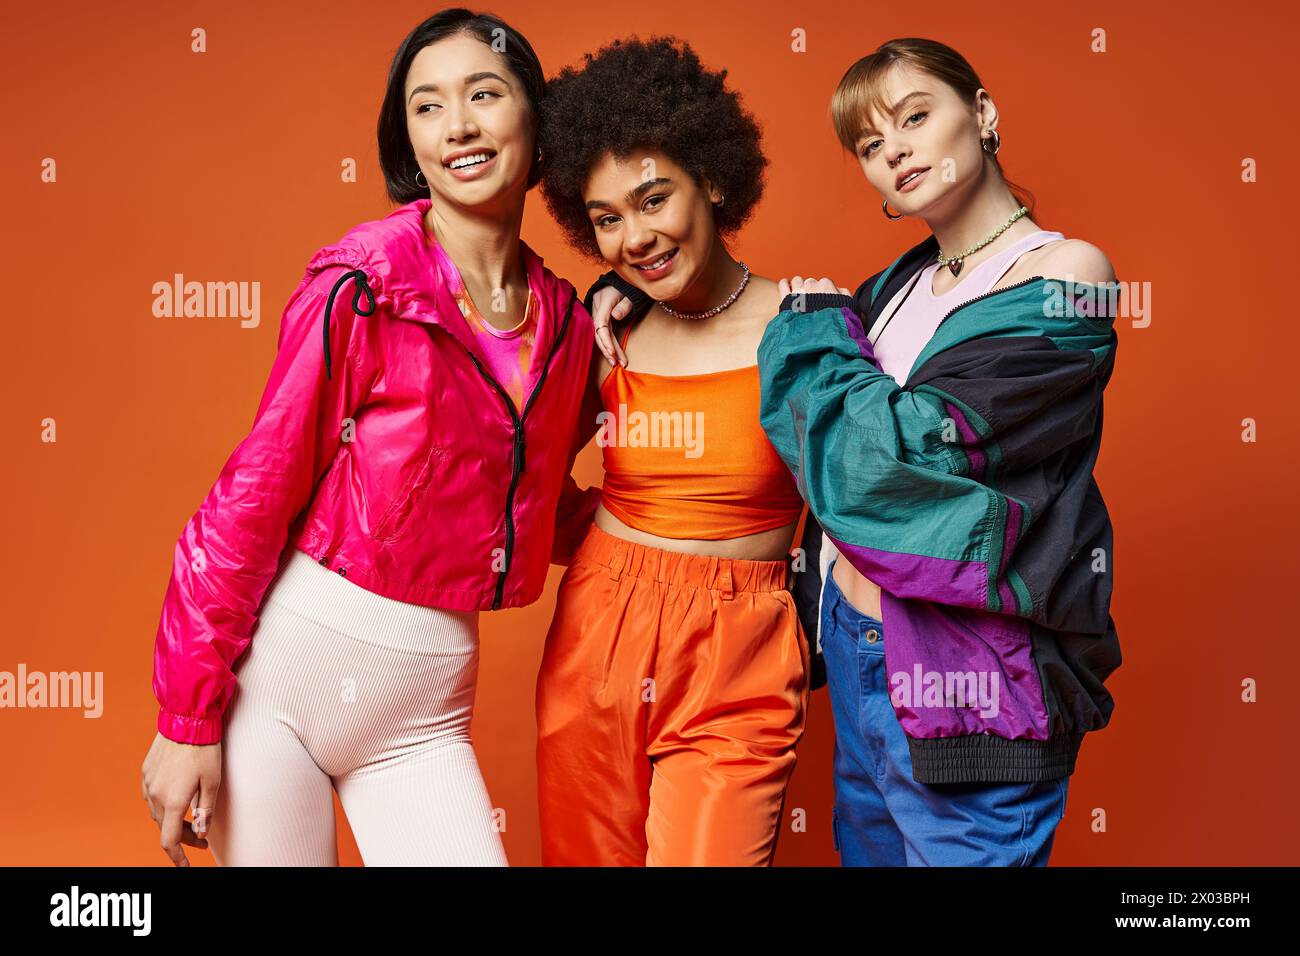 Trois femmes de différentes ethnies se tiennent confiantes dans un studio avec un fond orange, mettant en valeur la beauté multiculturelle. Banque D'Images